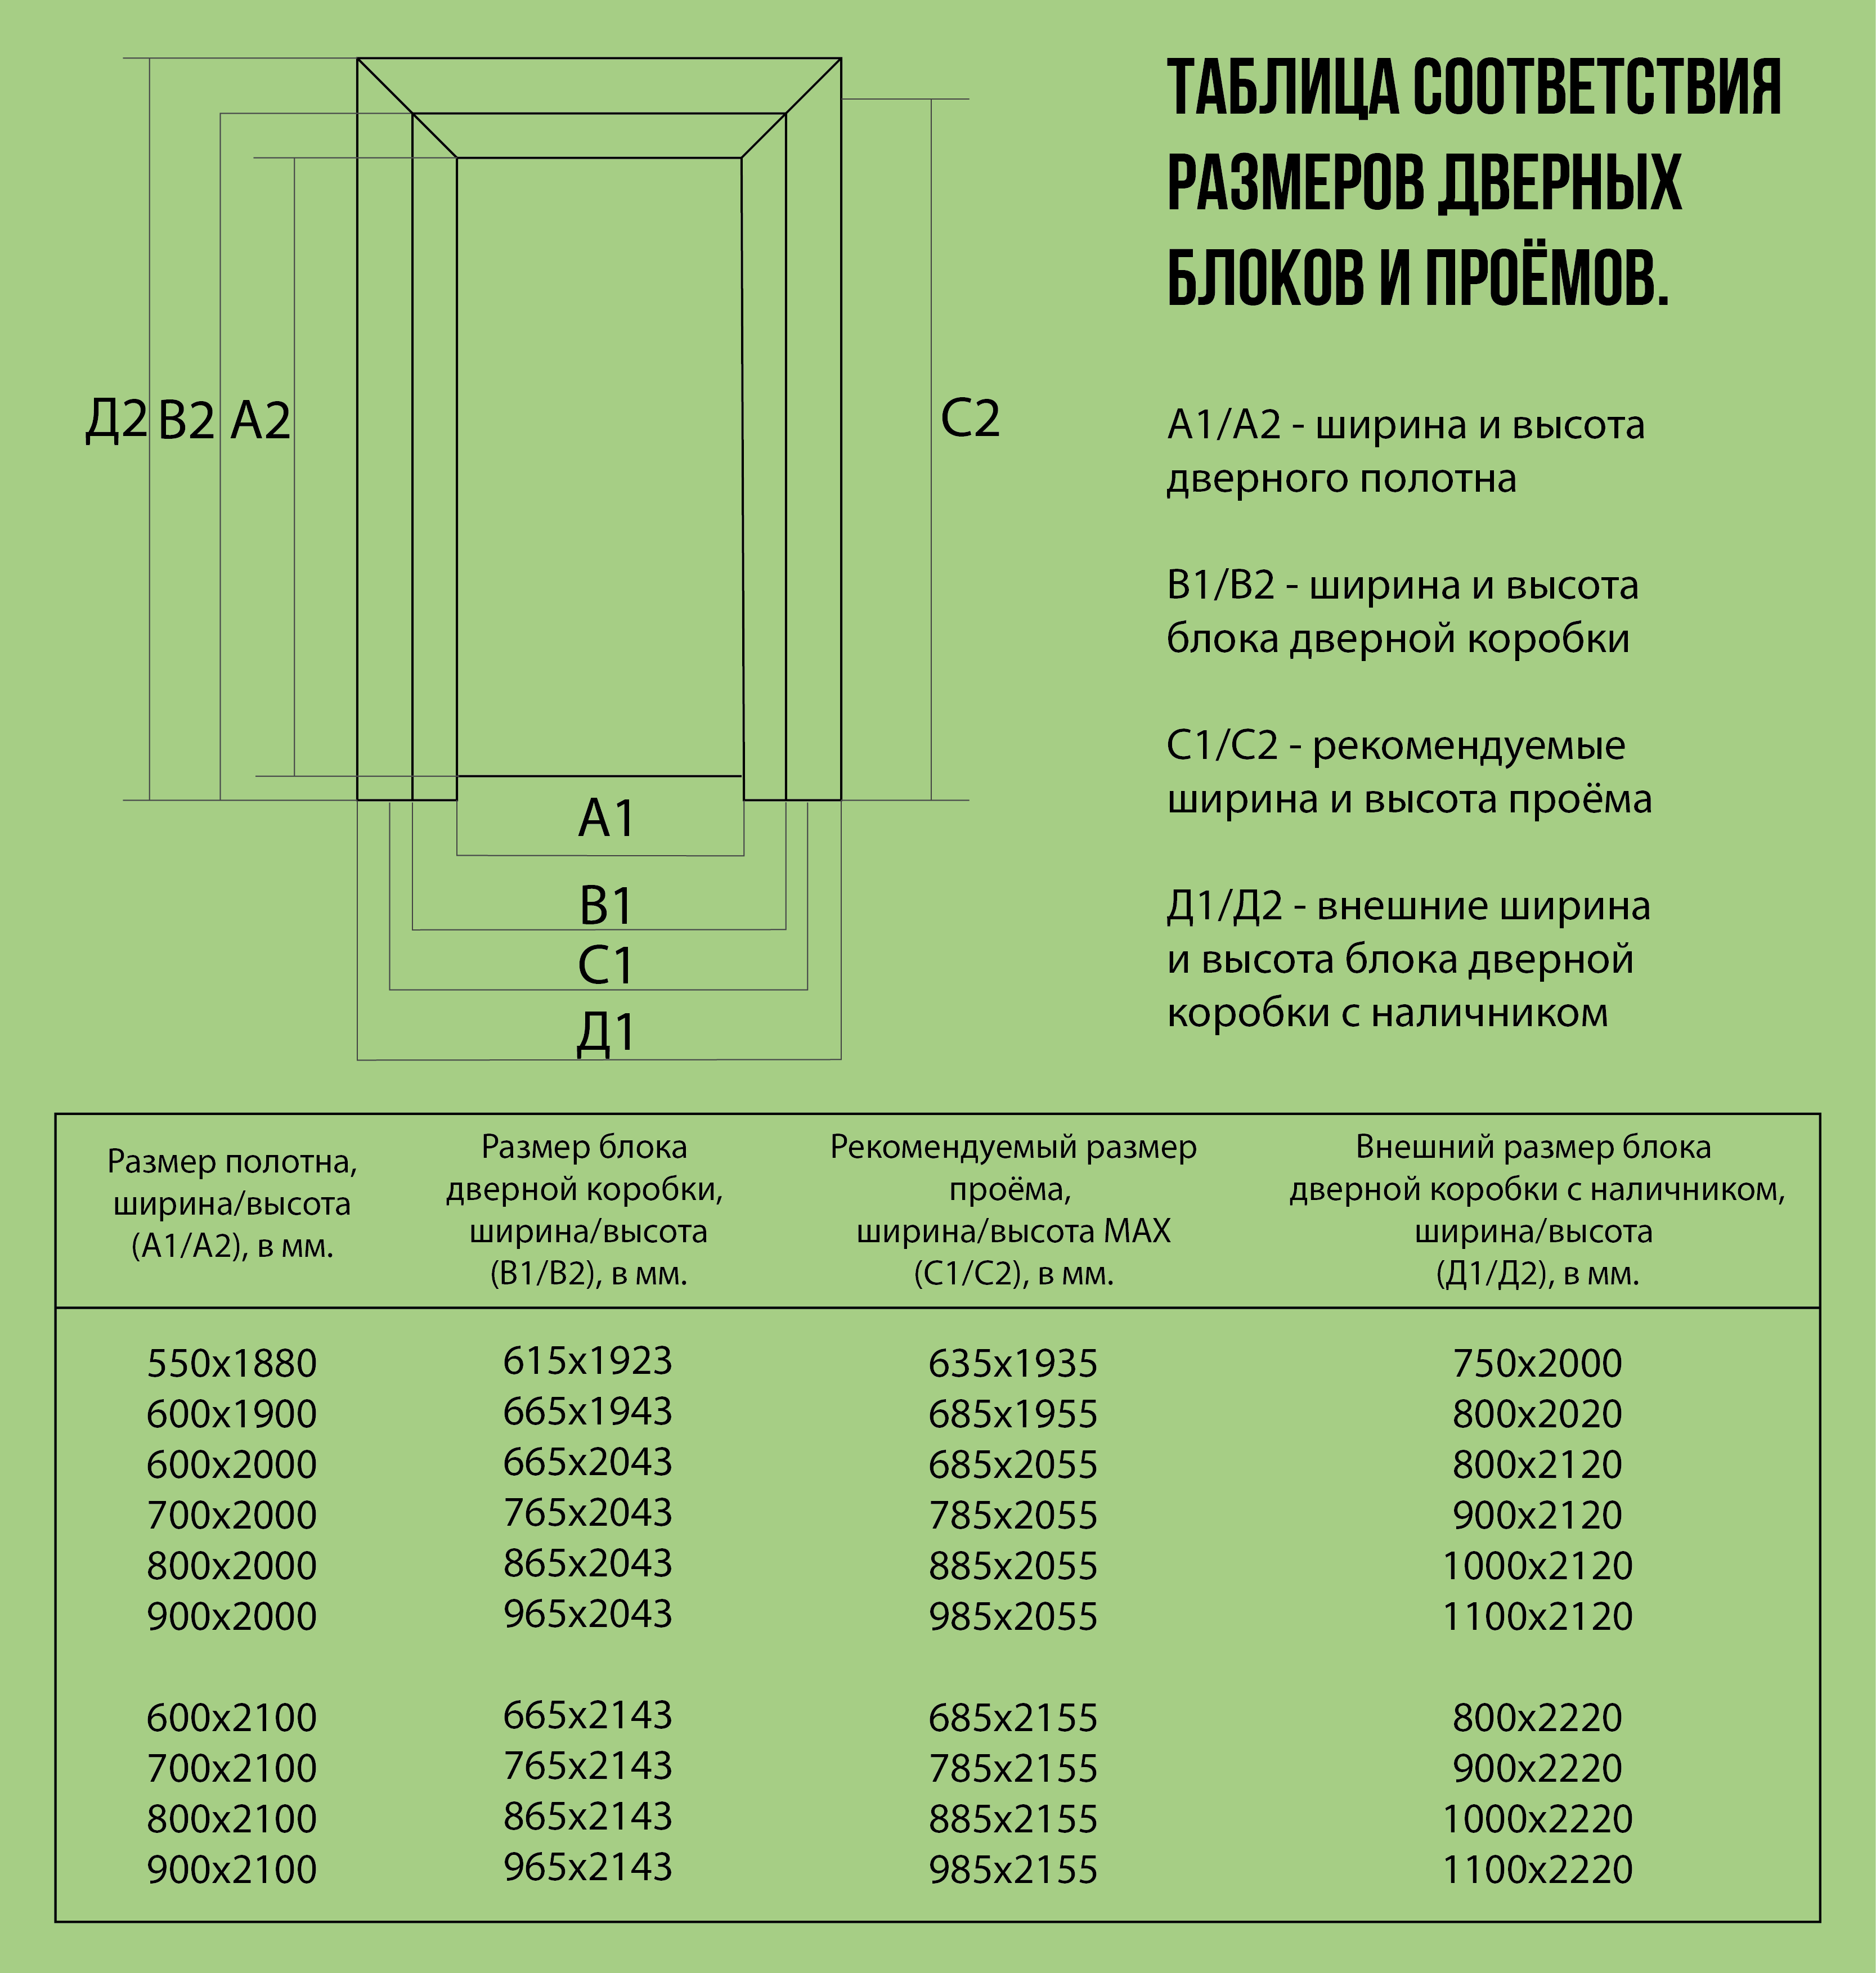 Таблица размеров дверных проемов и дверной коробки